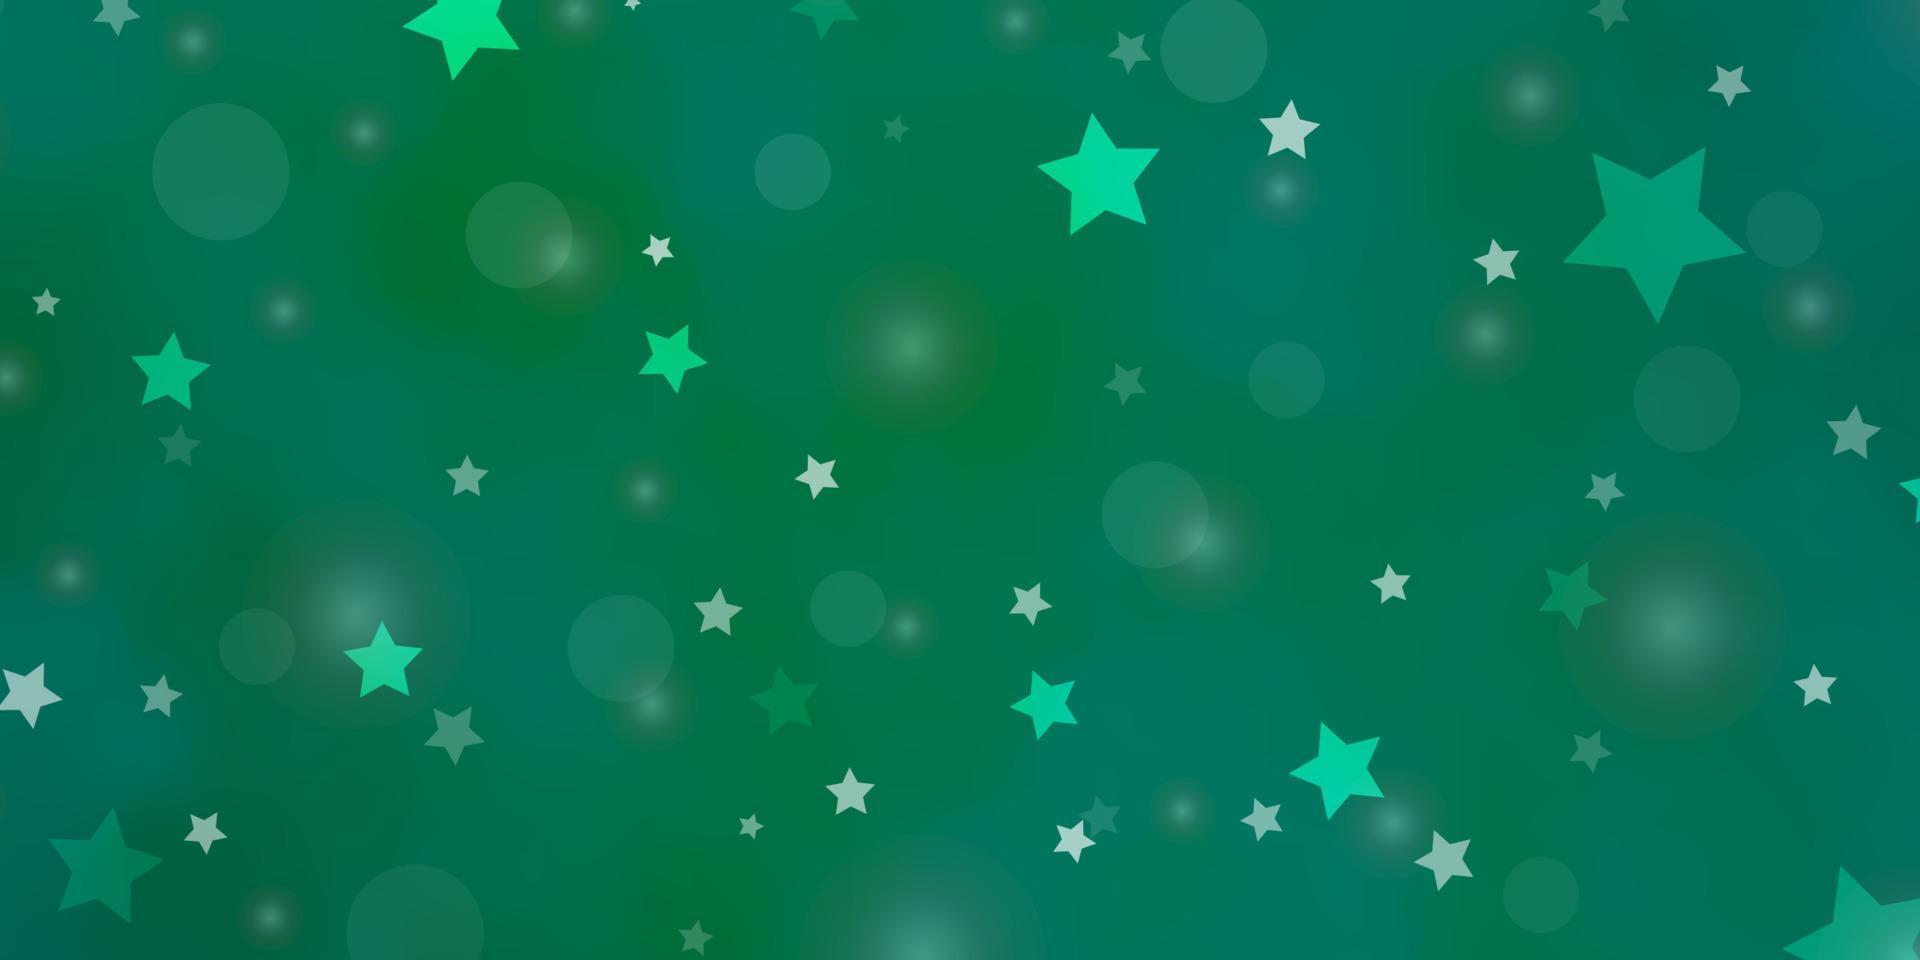 layout vettoriale verde chiaro con cerchi, stelle.